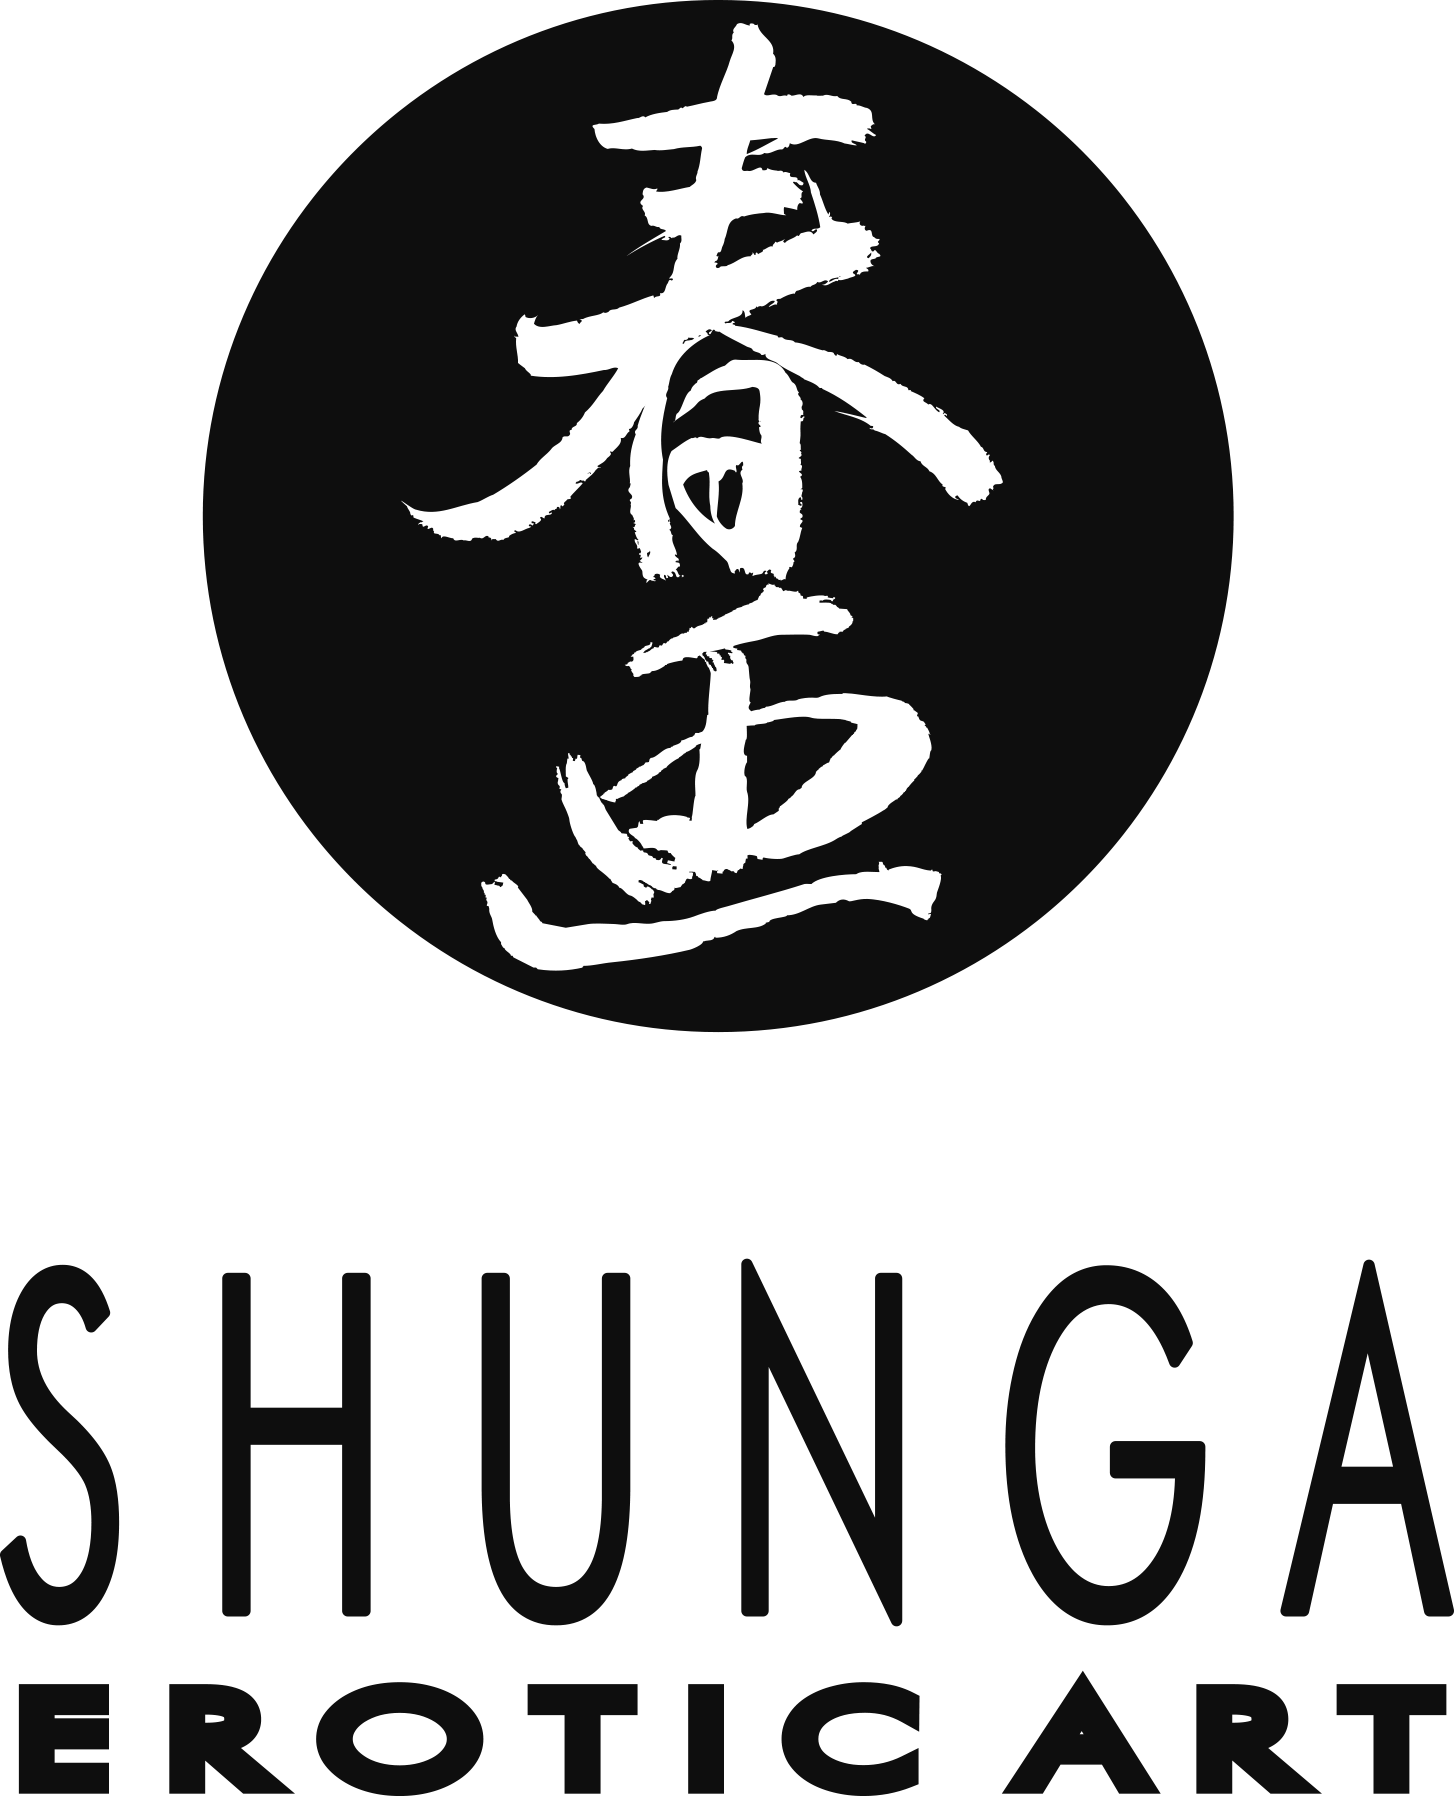 Shunga